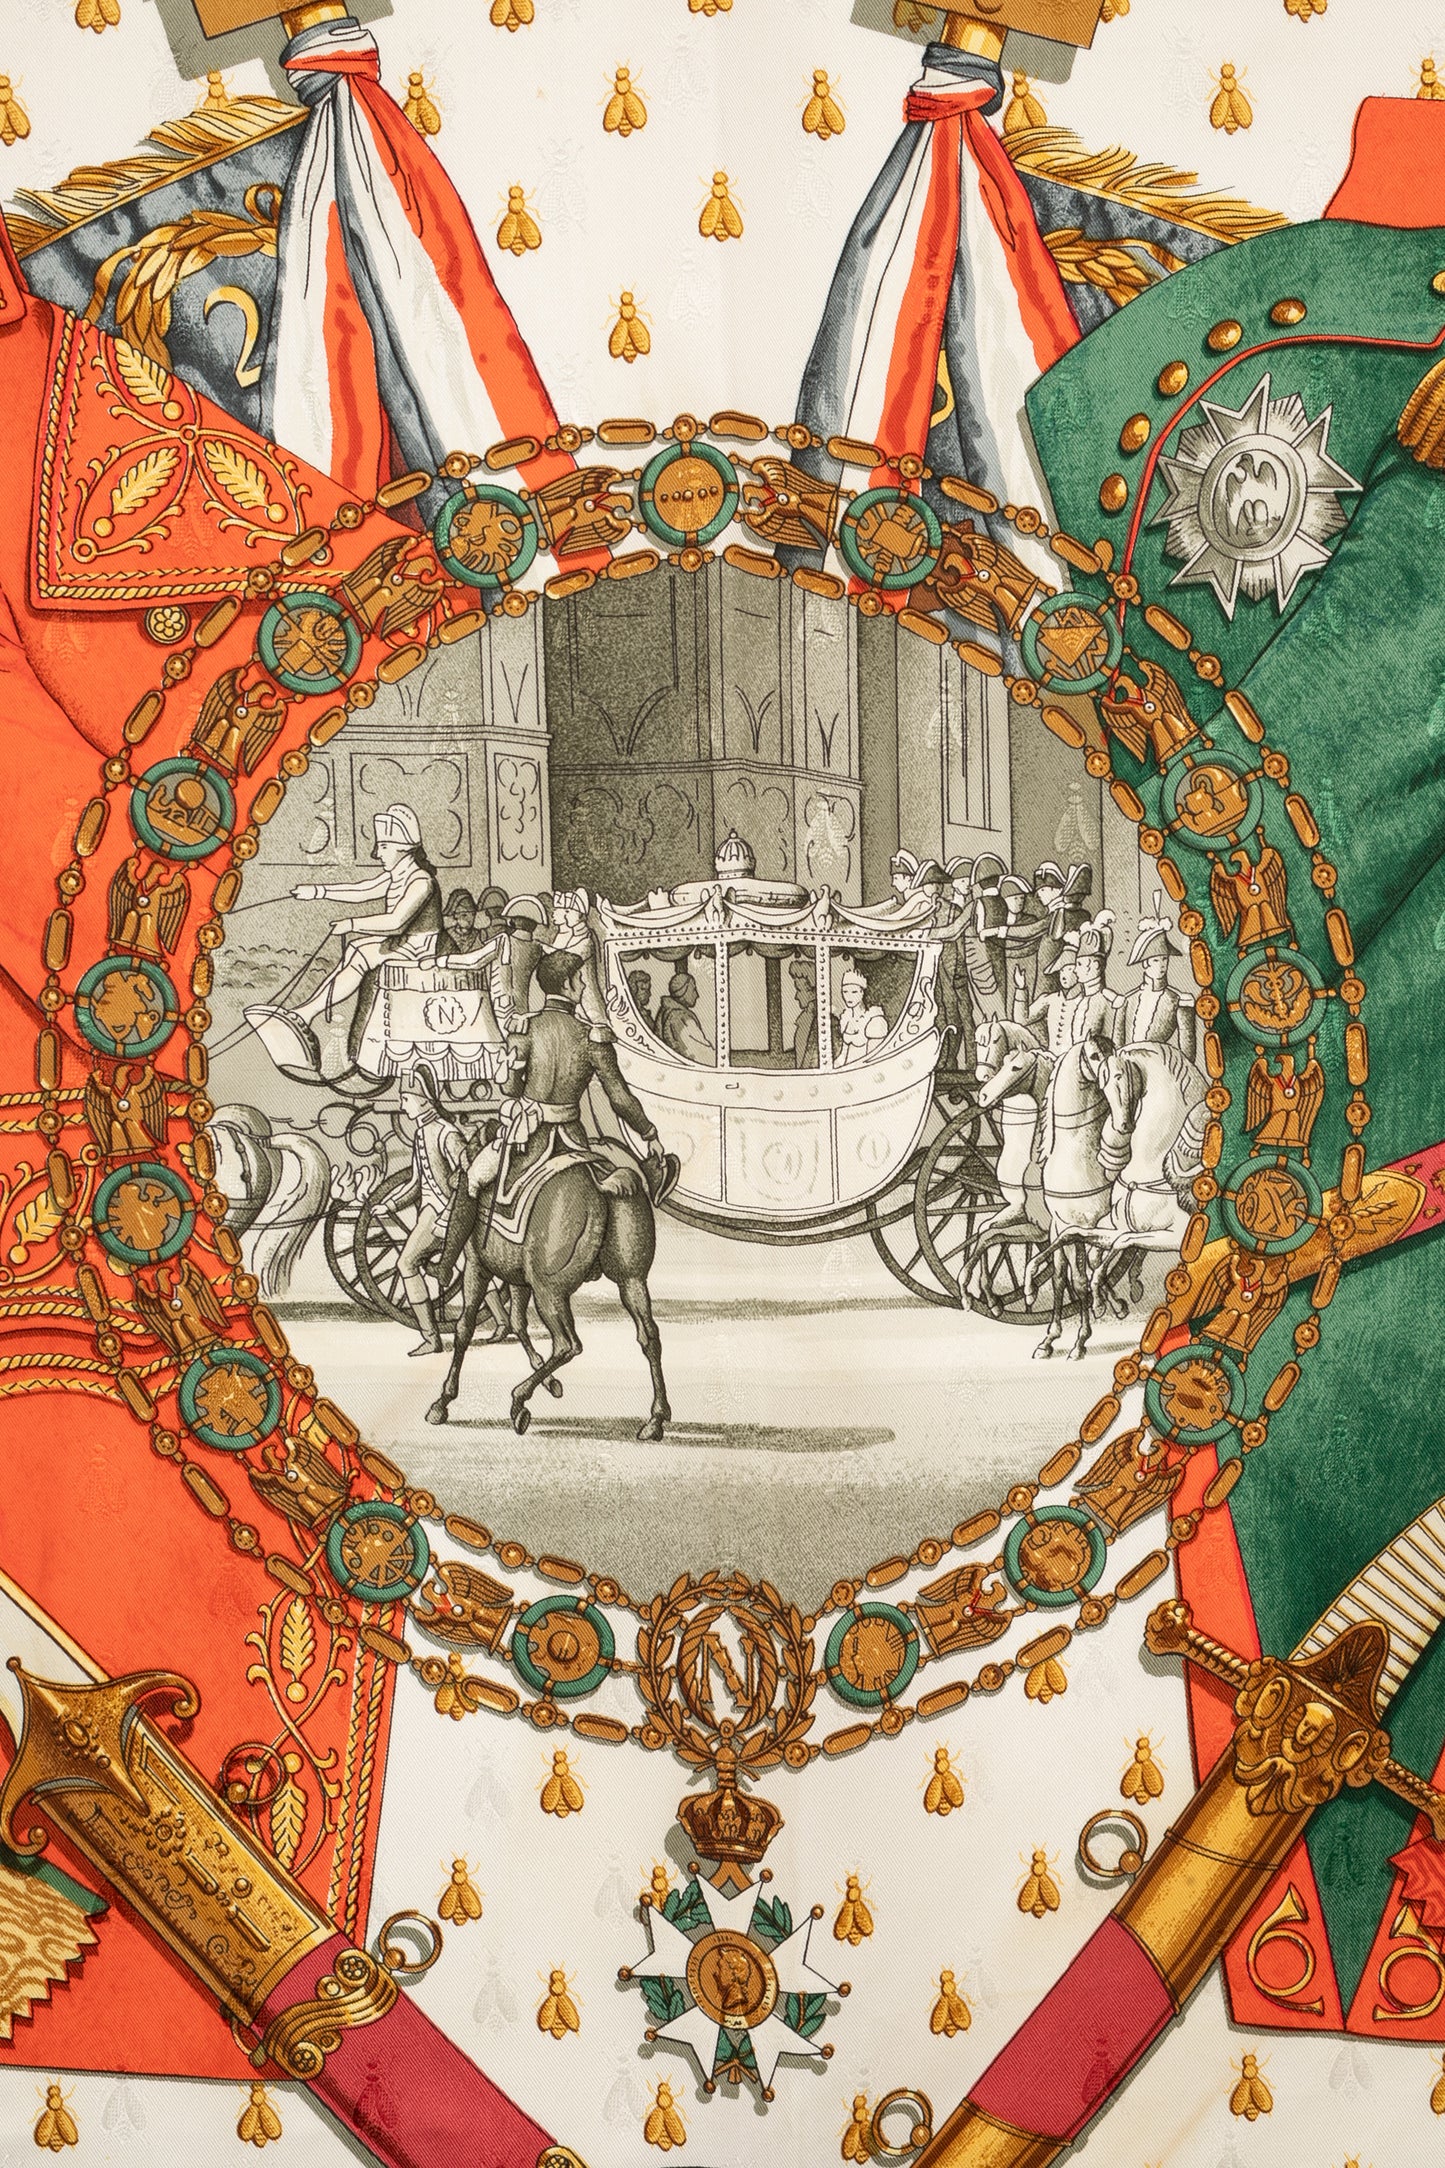 Foulard  "Napoléon" Hermès